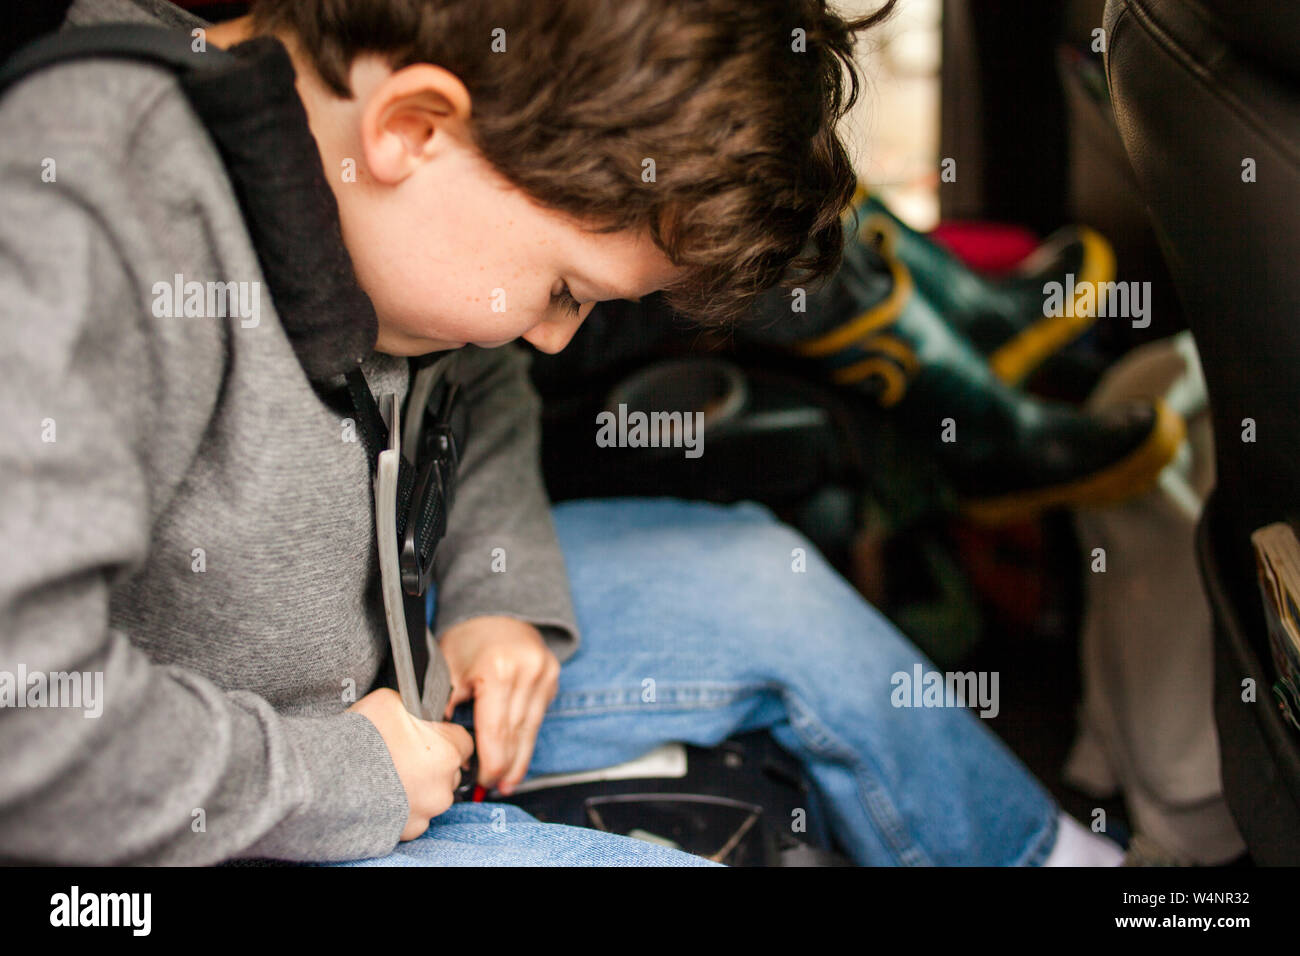 Ein kleines Kind arbeitet fleißig, um sich in eigenen Kindersitz anschnallen Stockfoto